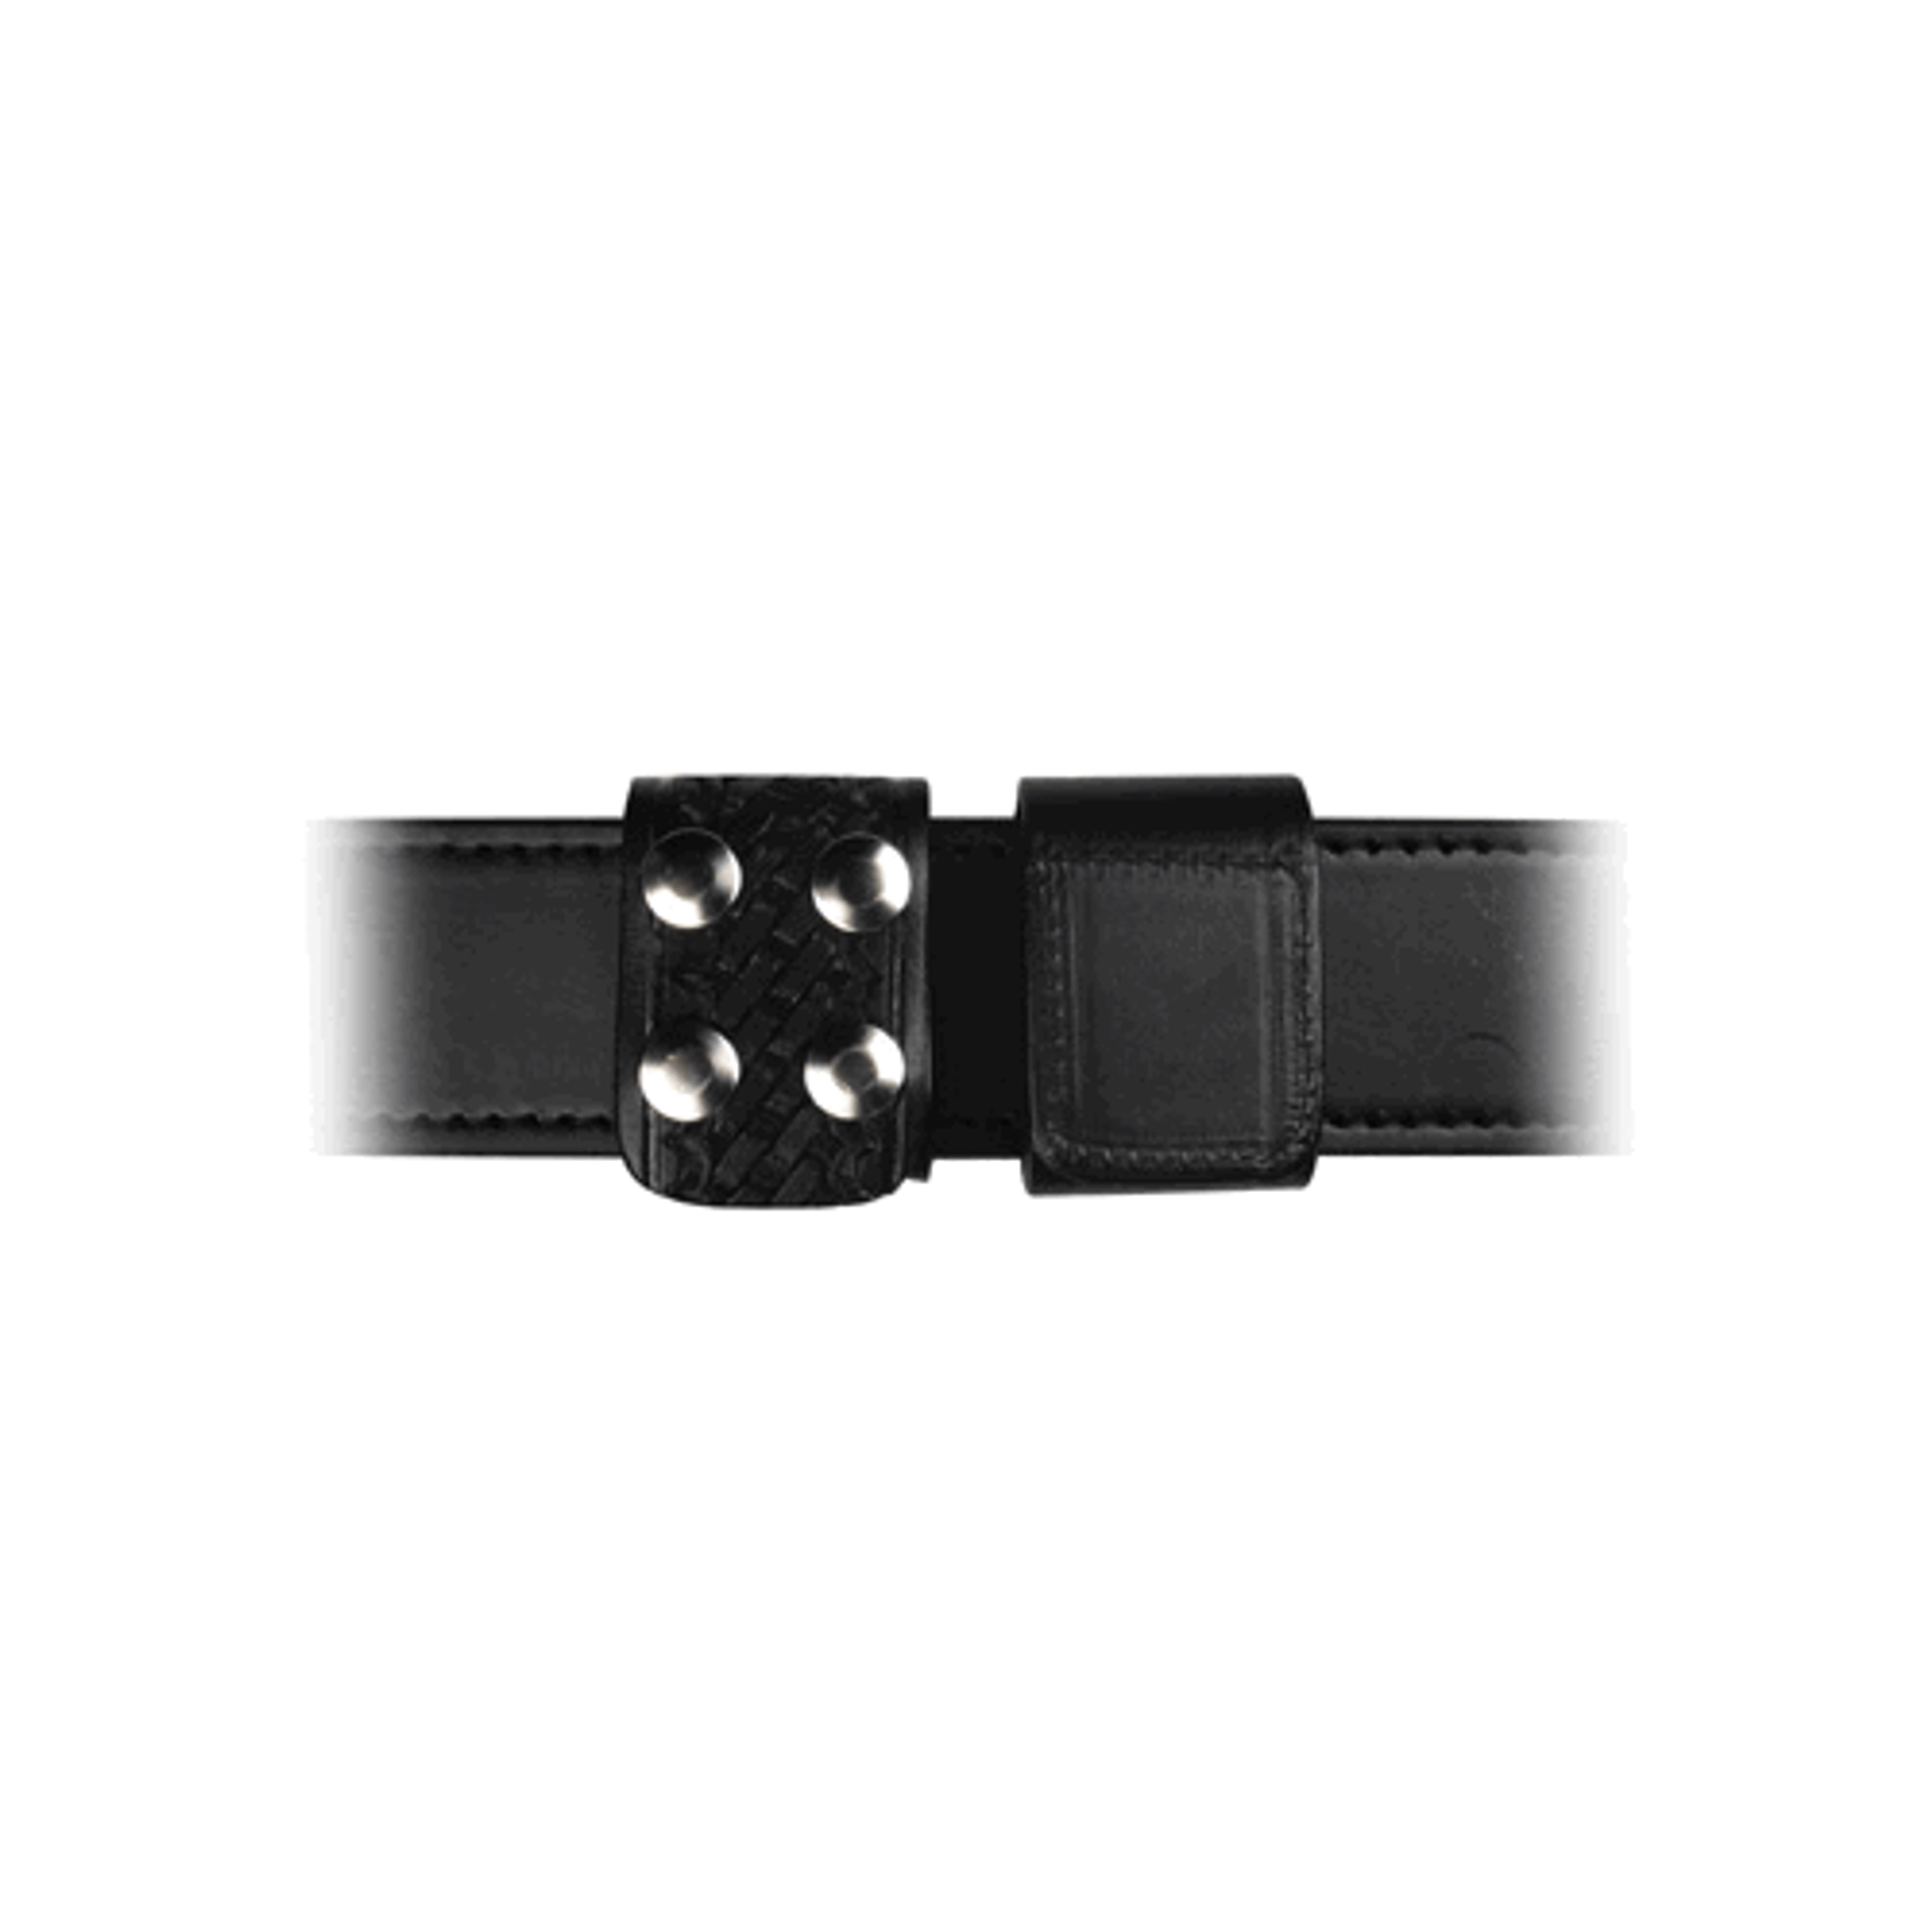 1 3/4 Double Wide Belt Keeper - KR5496-3-N